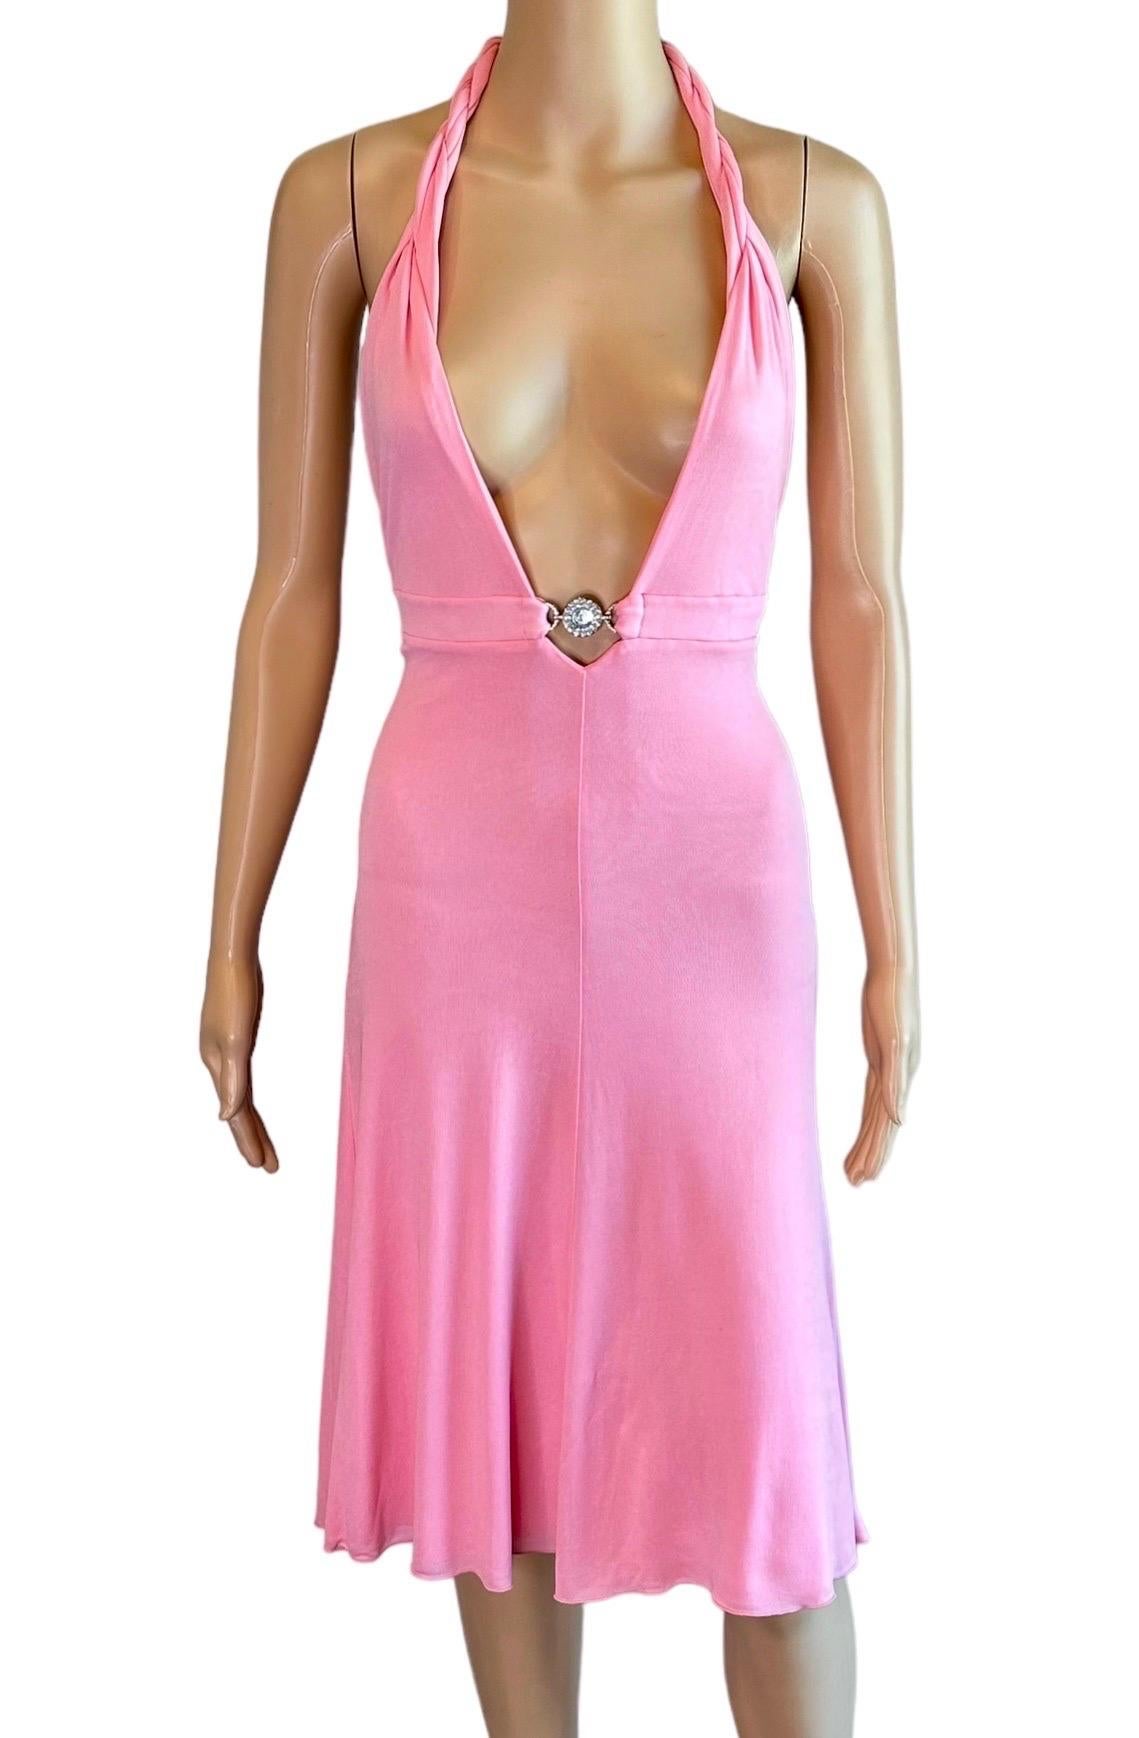 Versace S/S 2007 Crystal Logo Plunging Neckline Backless Halter Pink Dress For Sale 3